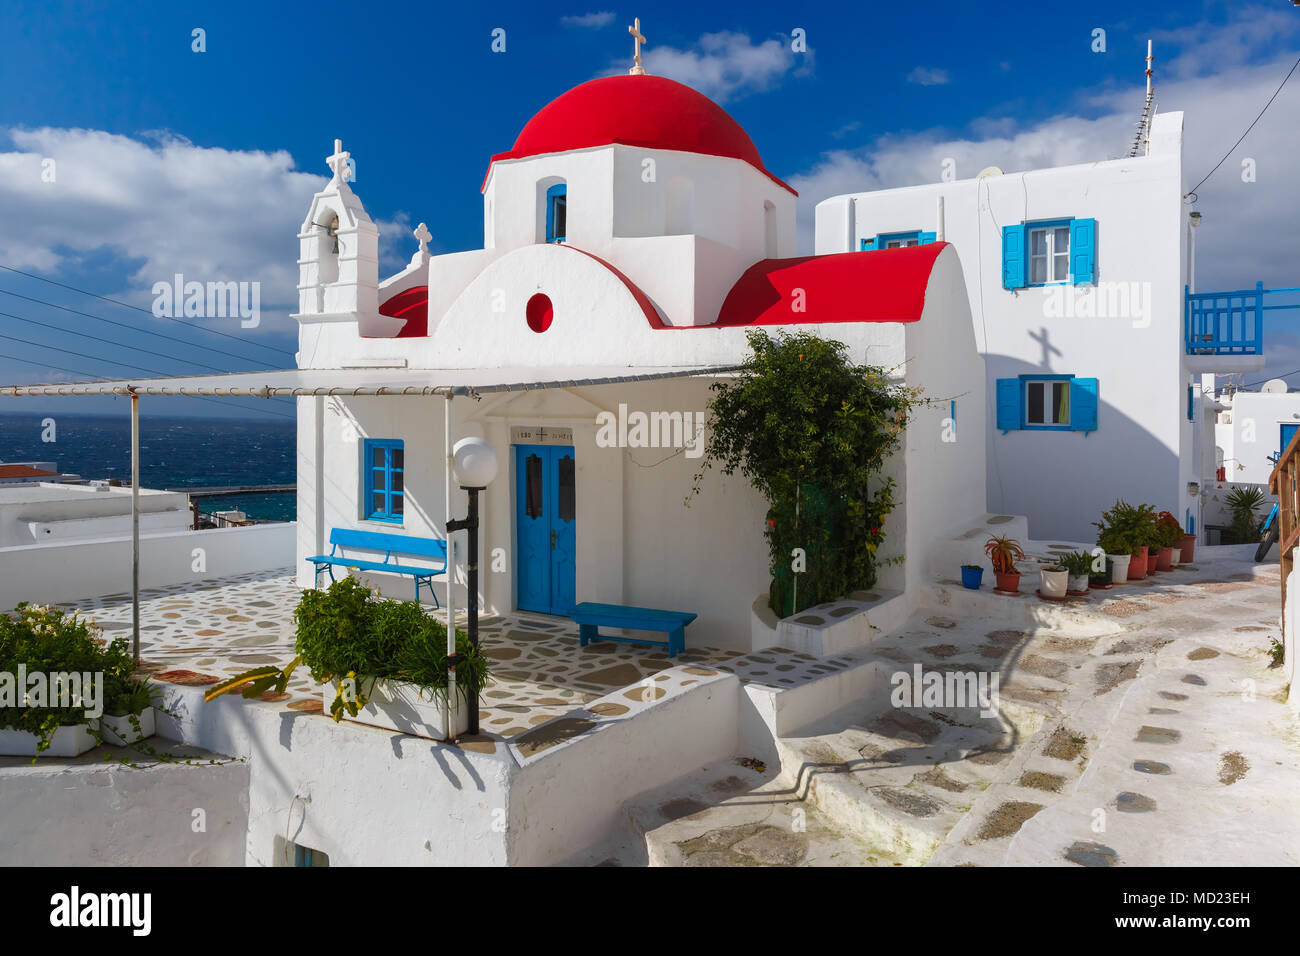 Grec typique église blanche sur l'île de Mykonos, Grèce Banque D'Images